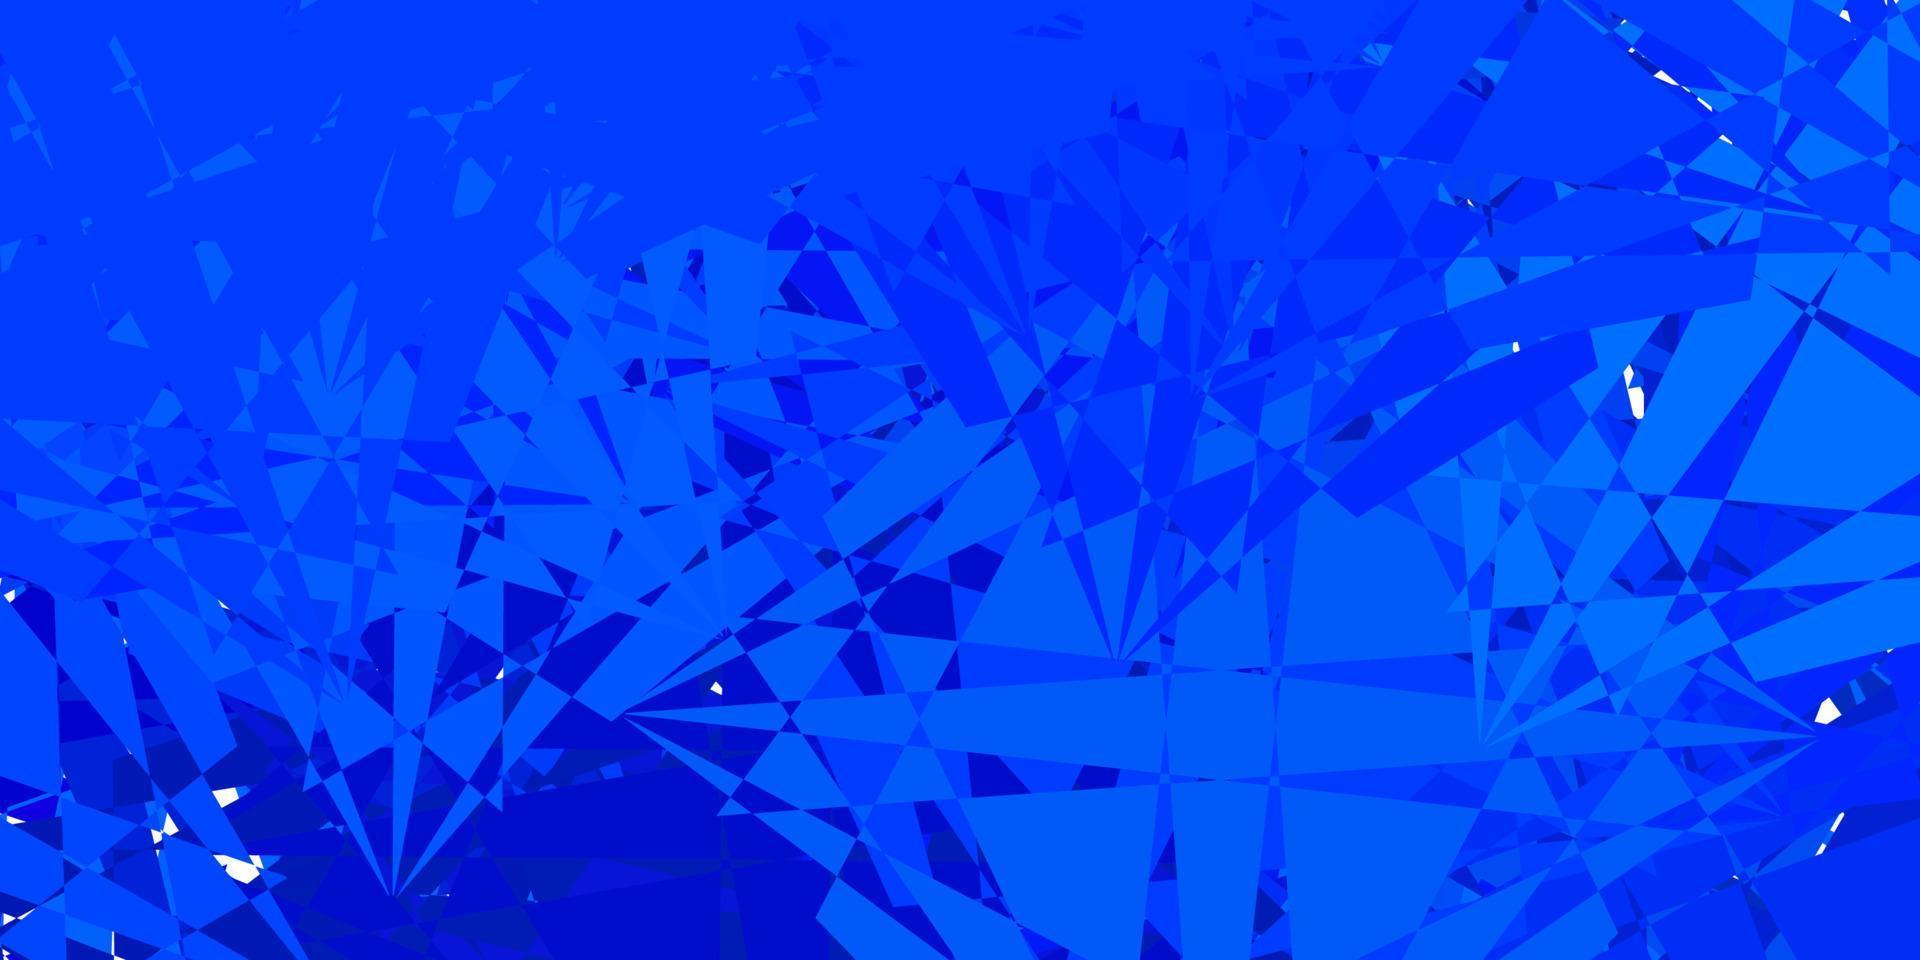 modèle vectoriel rose foncé, bleu avec des formes triangulaires.